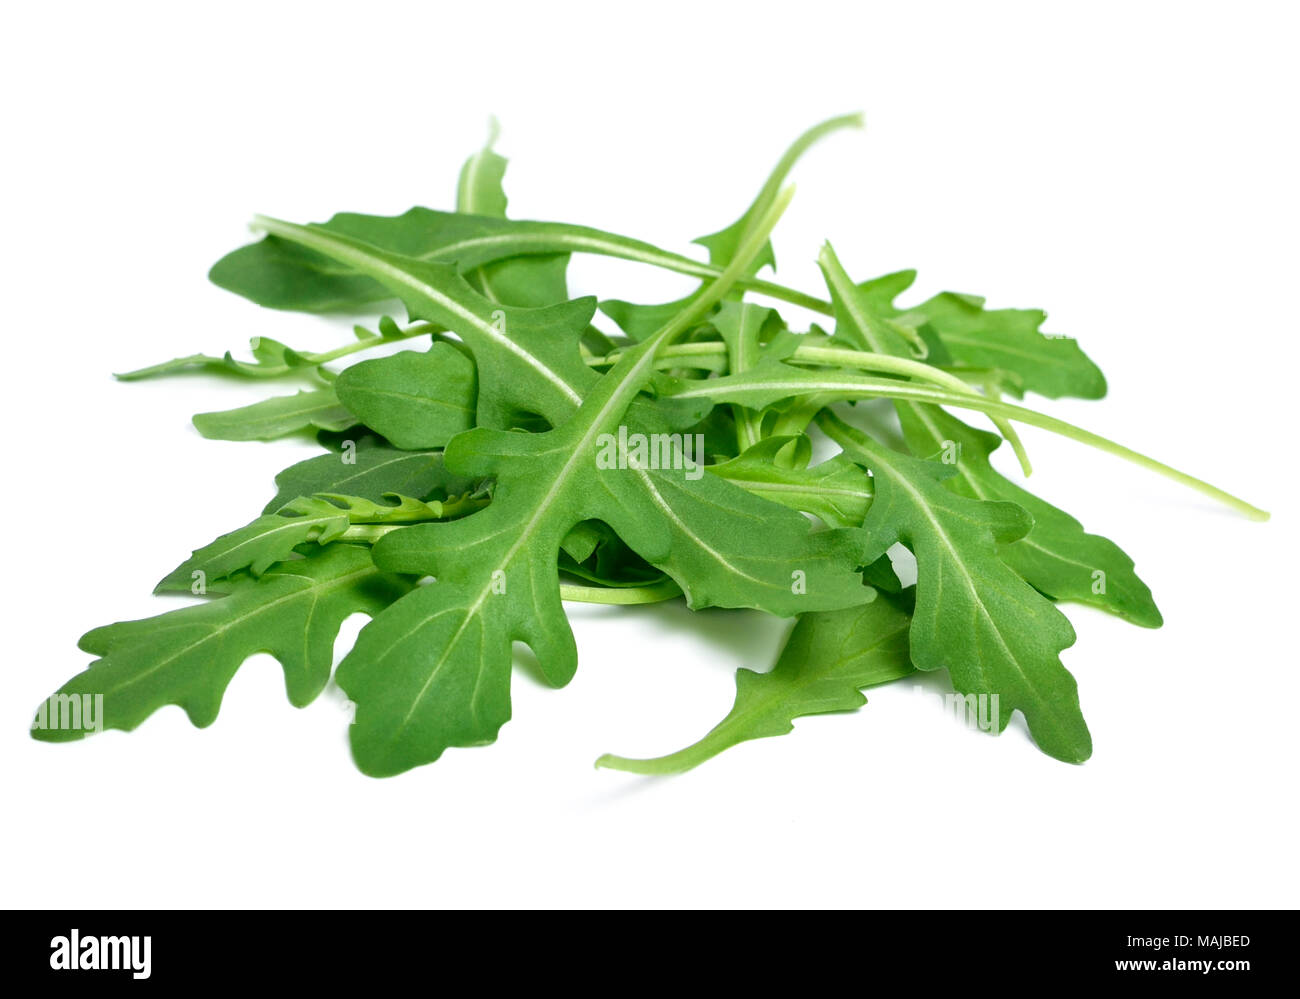 Fresh arugula or rocket leaves, isolated on white background. Arugula salad. Stock Photo